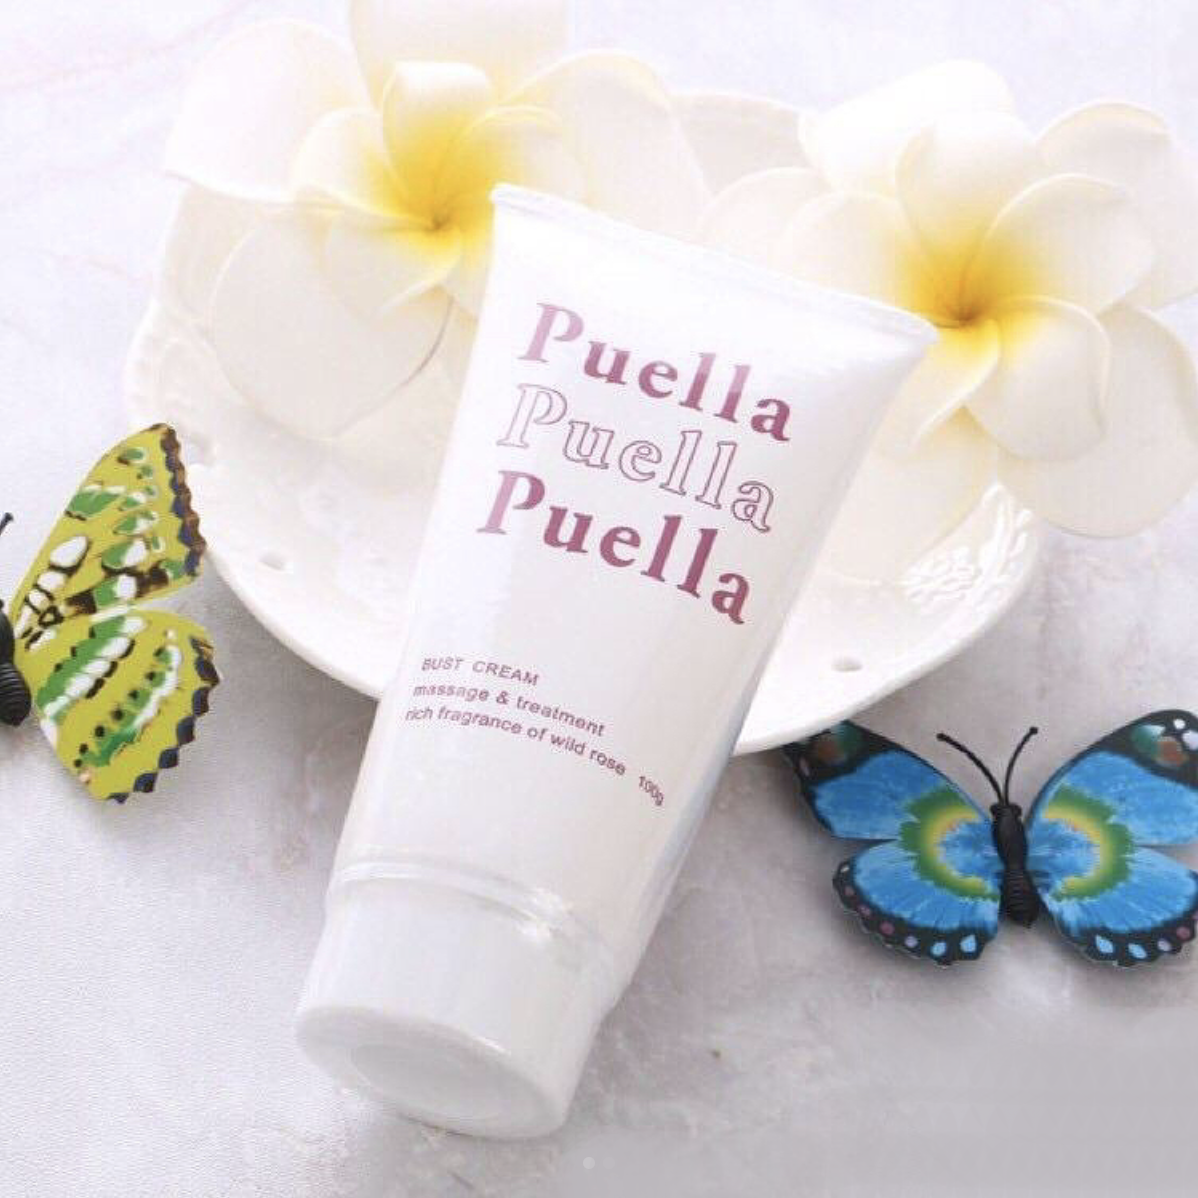 Puella豐胸霜使用天然植物成分，可有效改善胸部扁平及鬆弛問題。